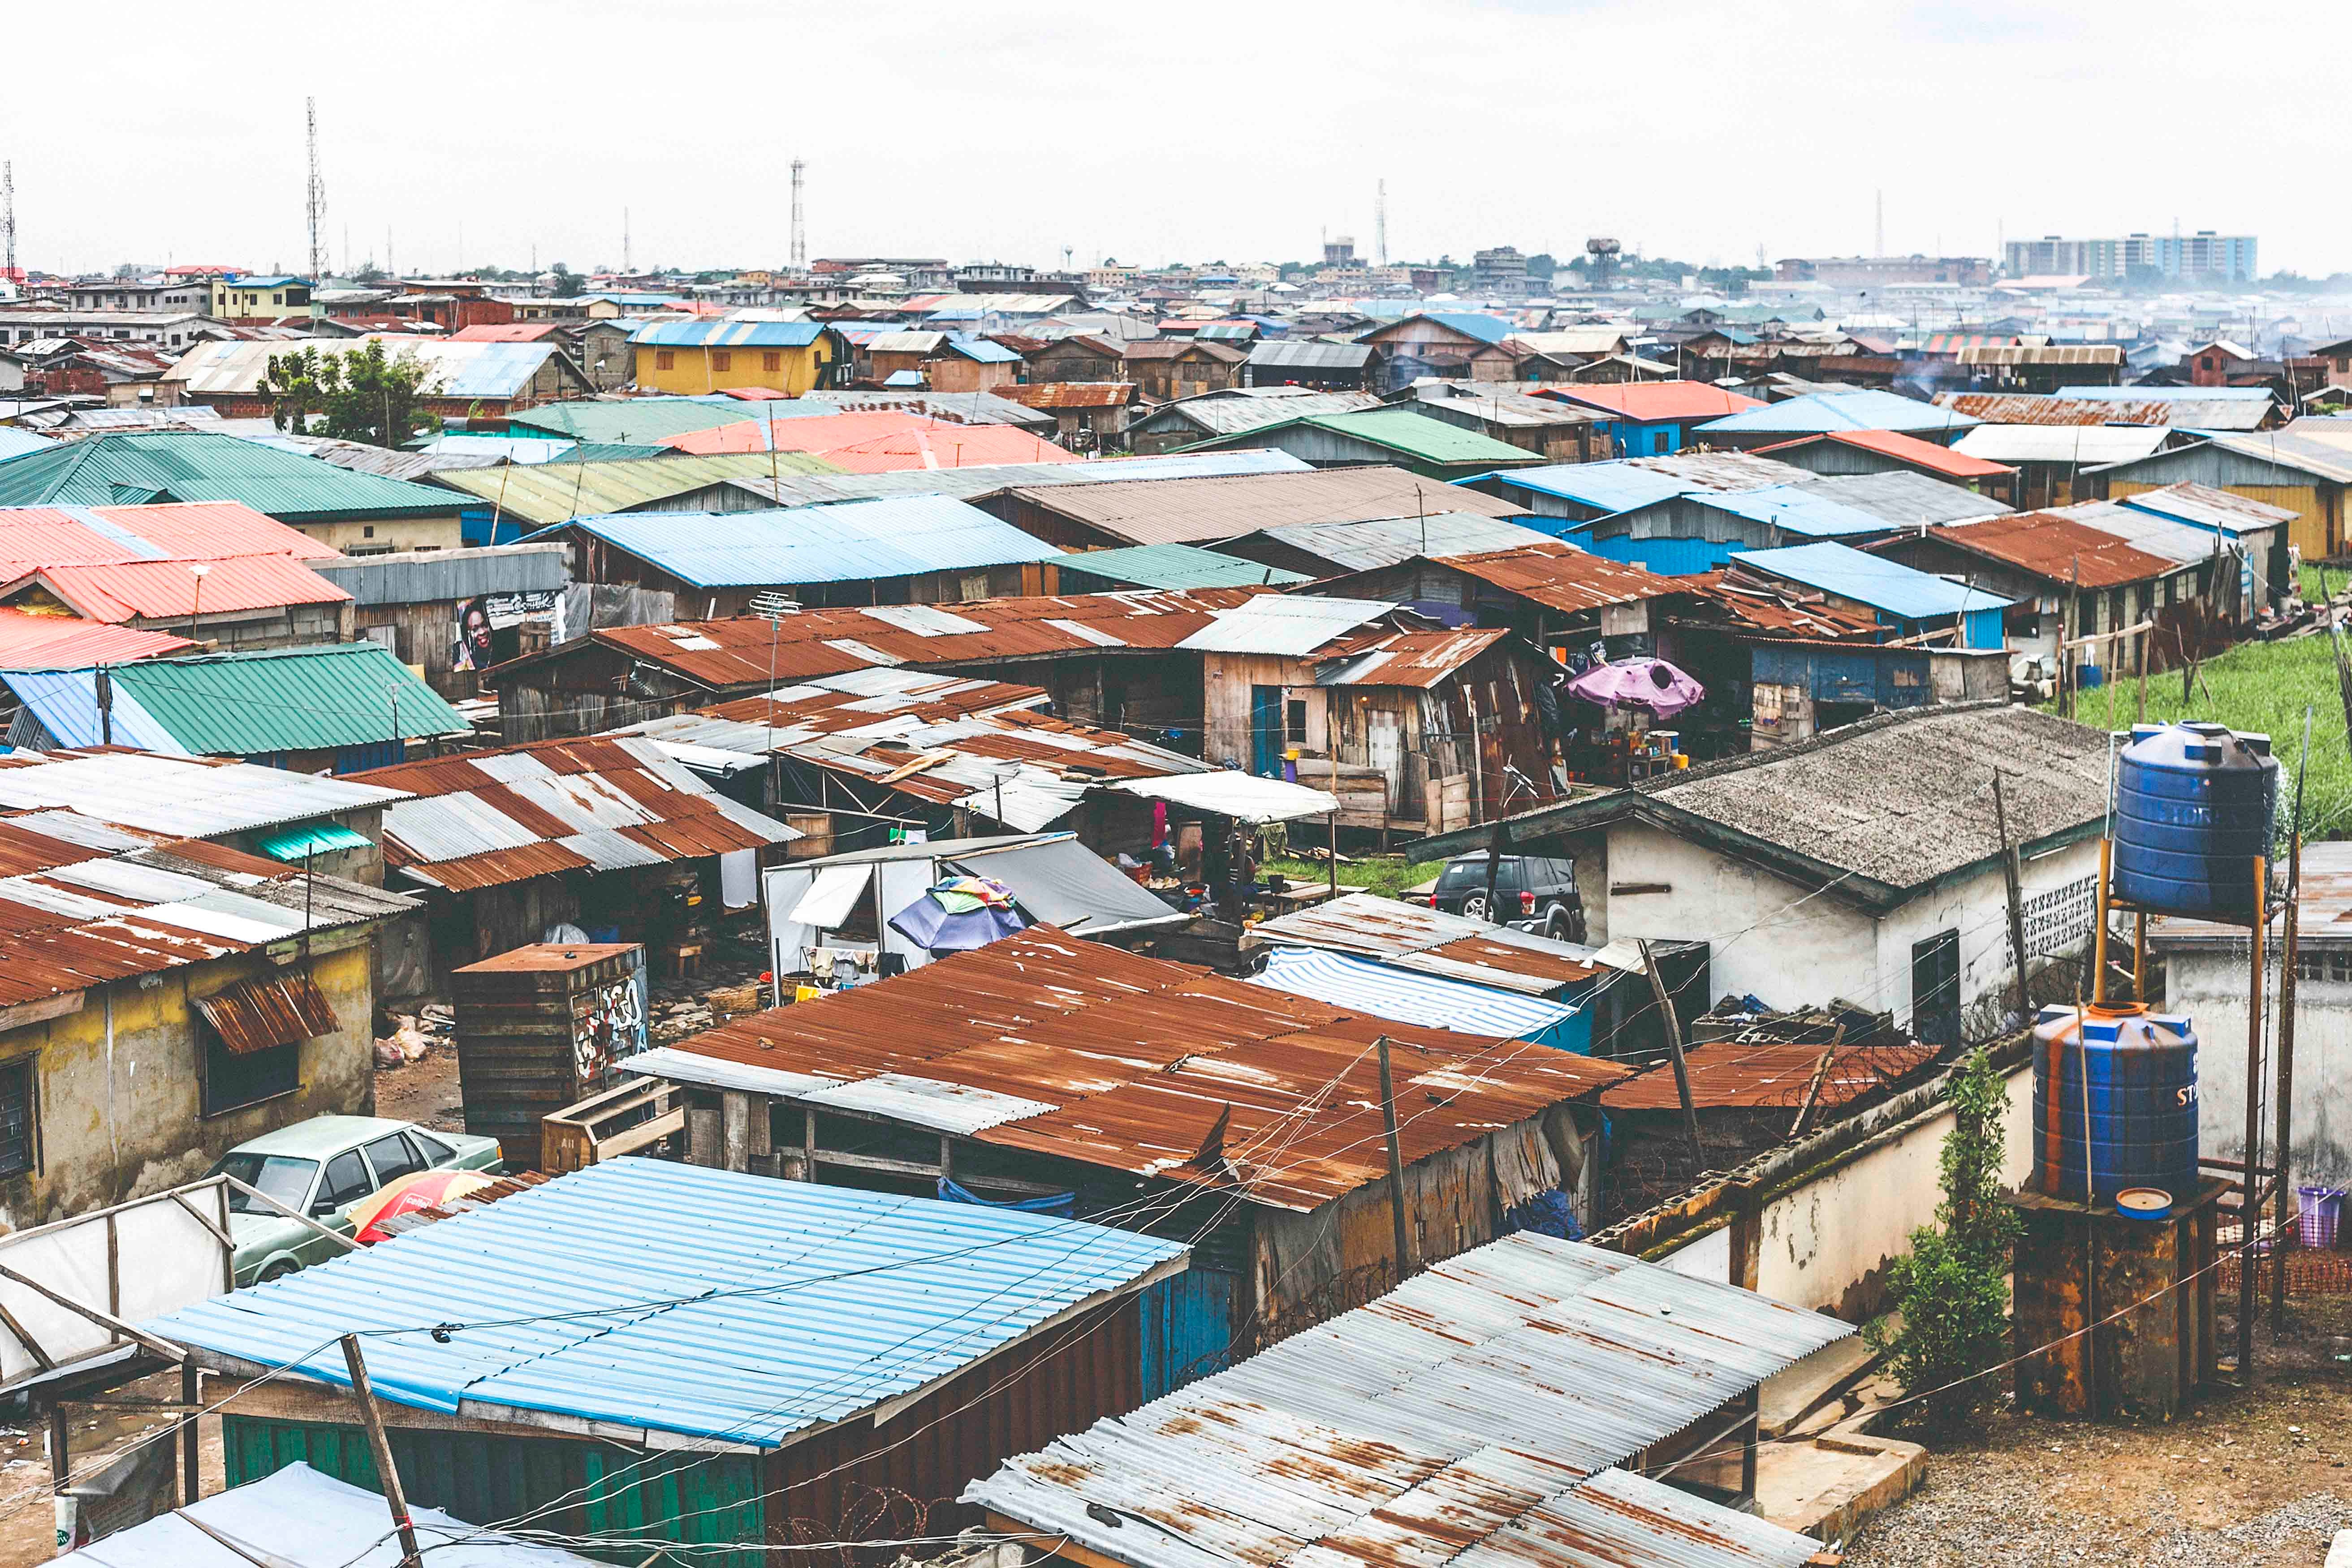 Aerial shot of a Lagos slum